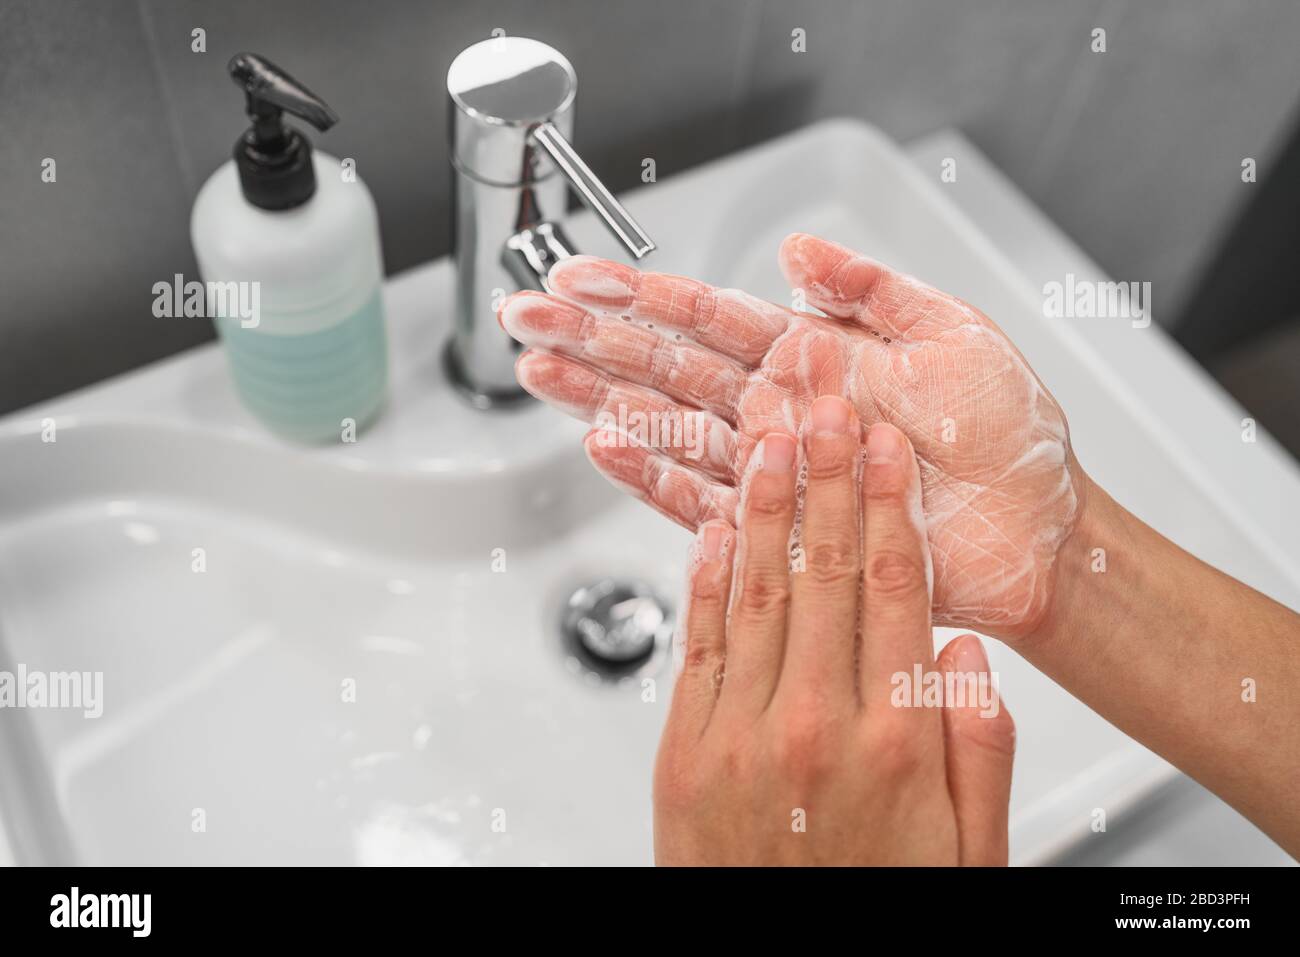 Lavage des mains le savon de frottement dans les mains qui moussant les bulles de mousse pour la prévention du virus Corona COVID-19, l'hygiène pour arrêter la propagation du coronavirus. Femme étape de lavage des mains à l'évier de salle de bains. Banque D'Images